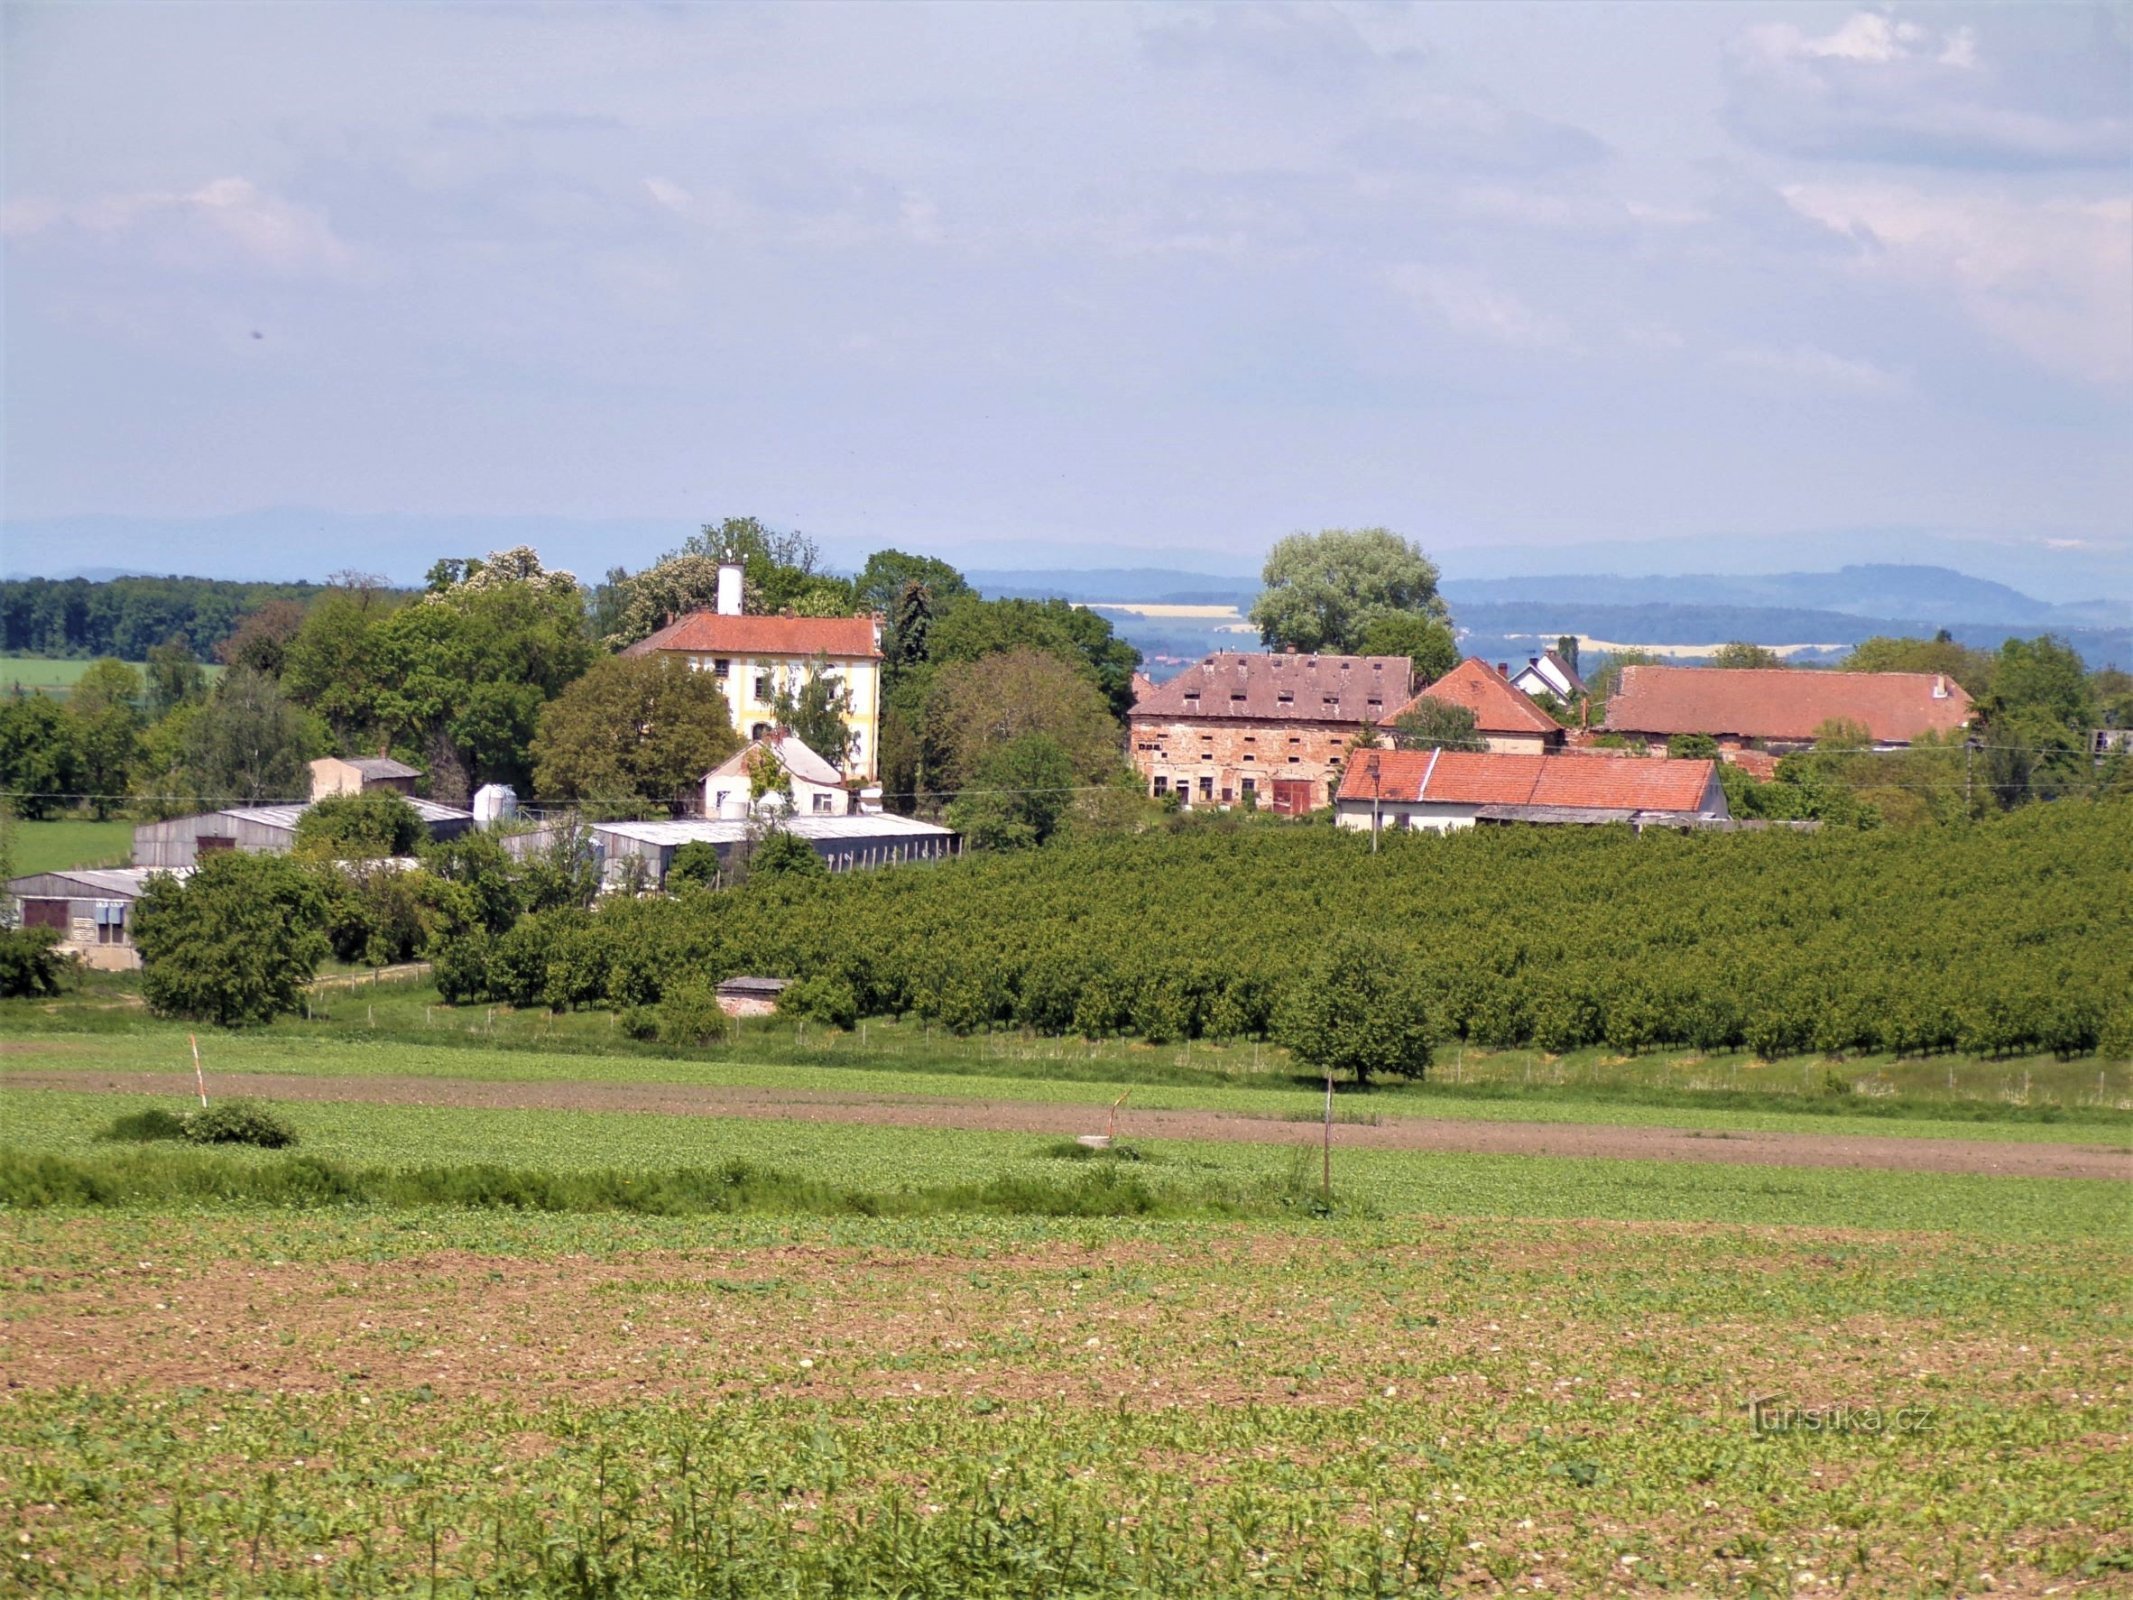 Območje gradu in nekdanje kmetije iz Horní Přím (Dolní Přím, 1.6.2021)